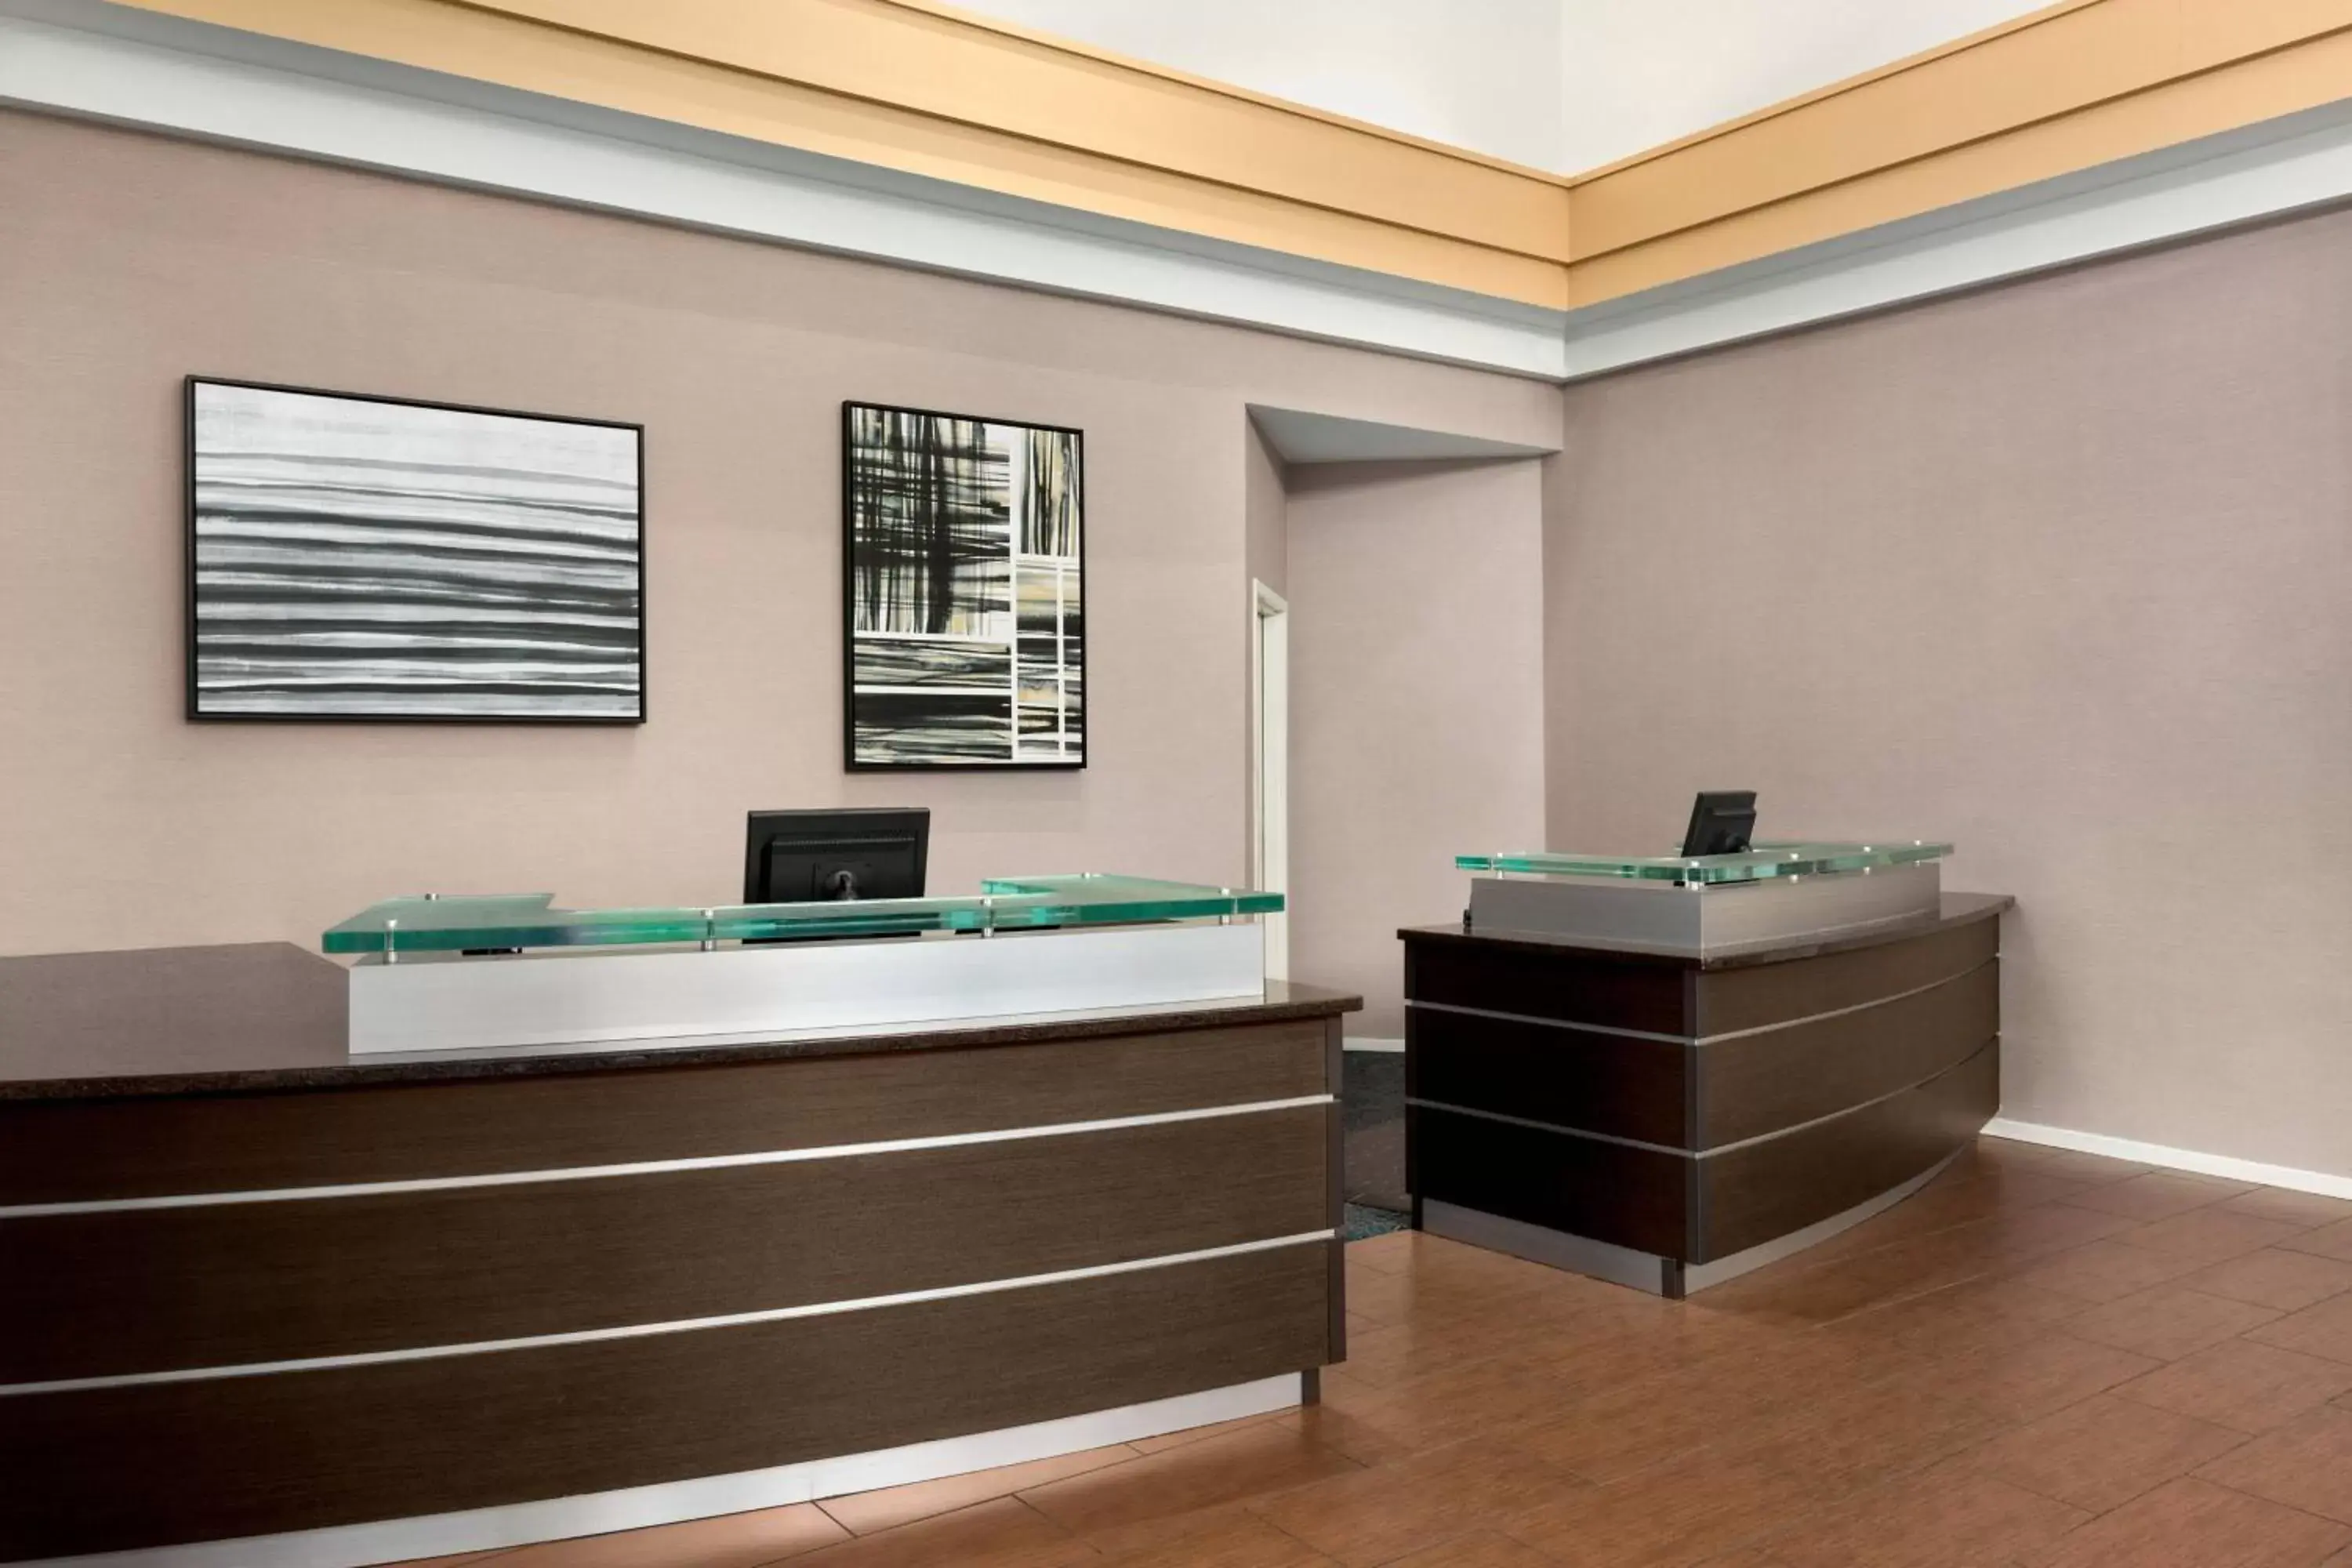 Lobby or reception, Lobby/Reception in Residence Inn Chattanooga Near Hamilton Place